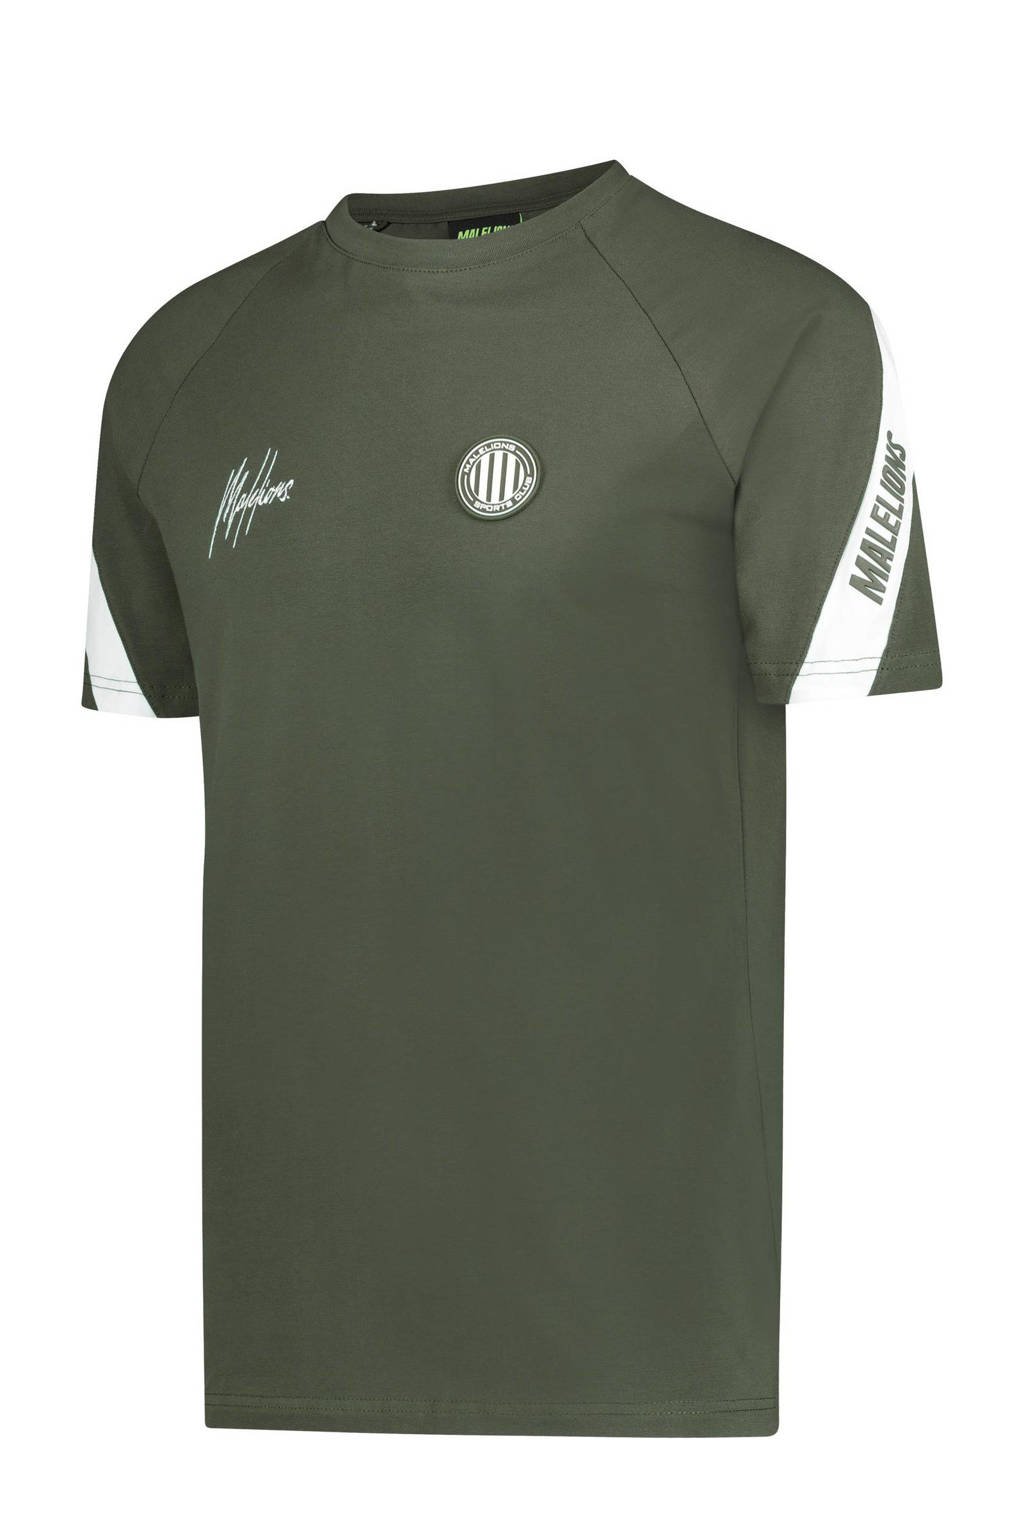 Malelions T-shirt pre-match met logo groen/wit, Groen/wit